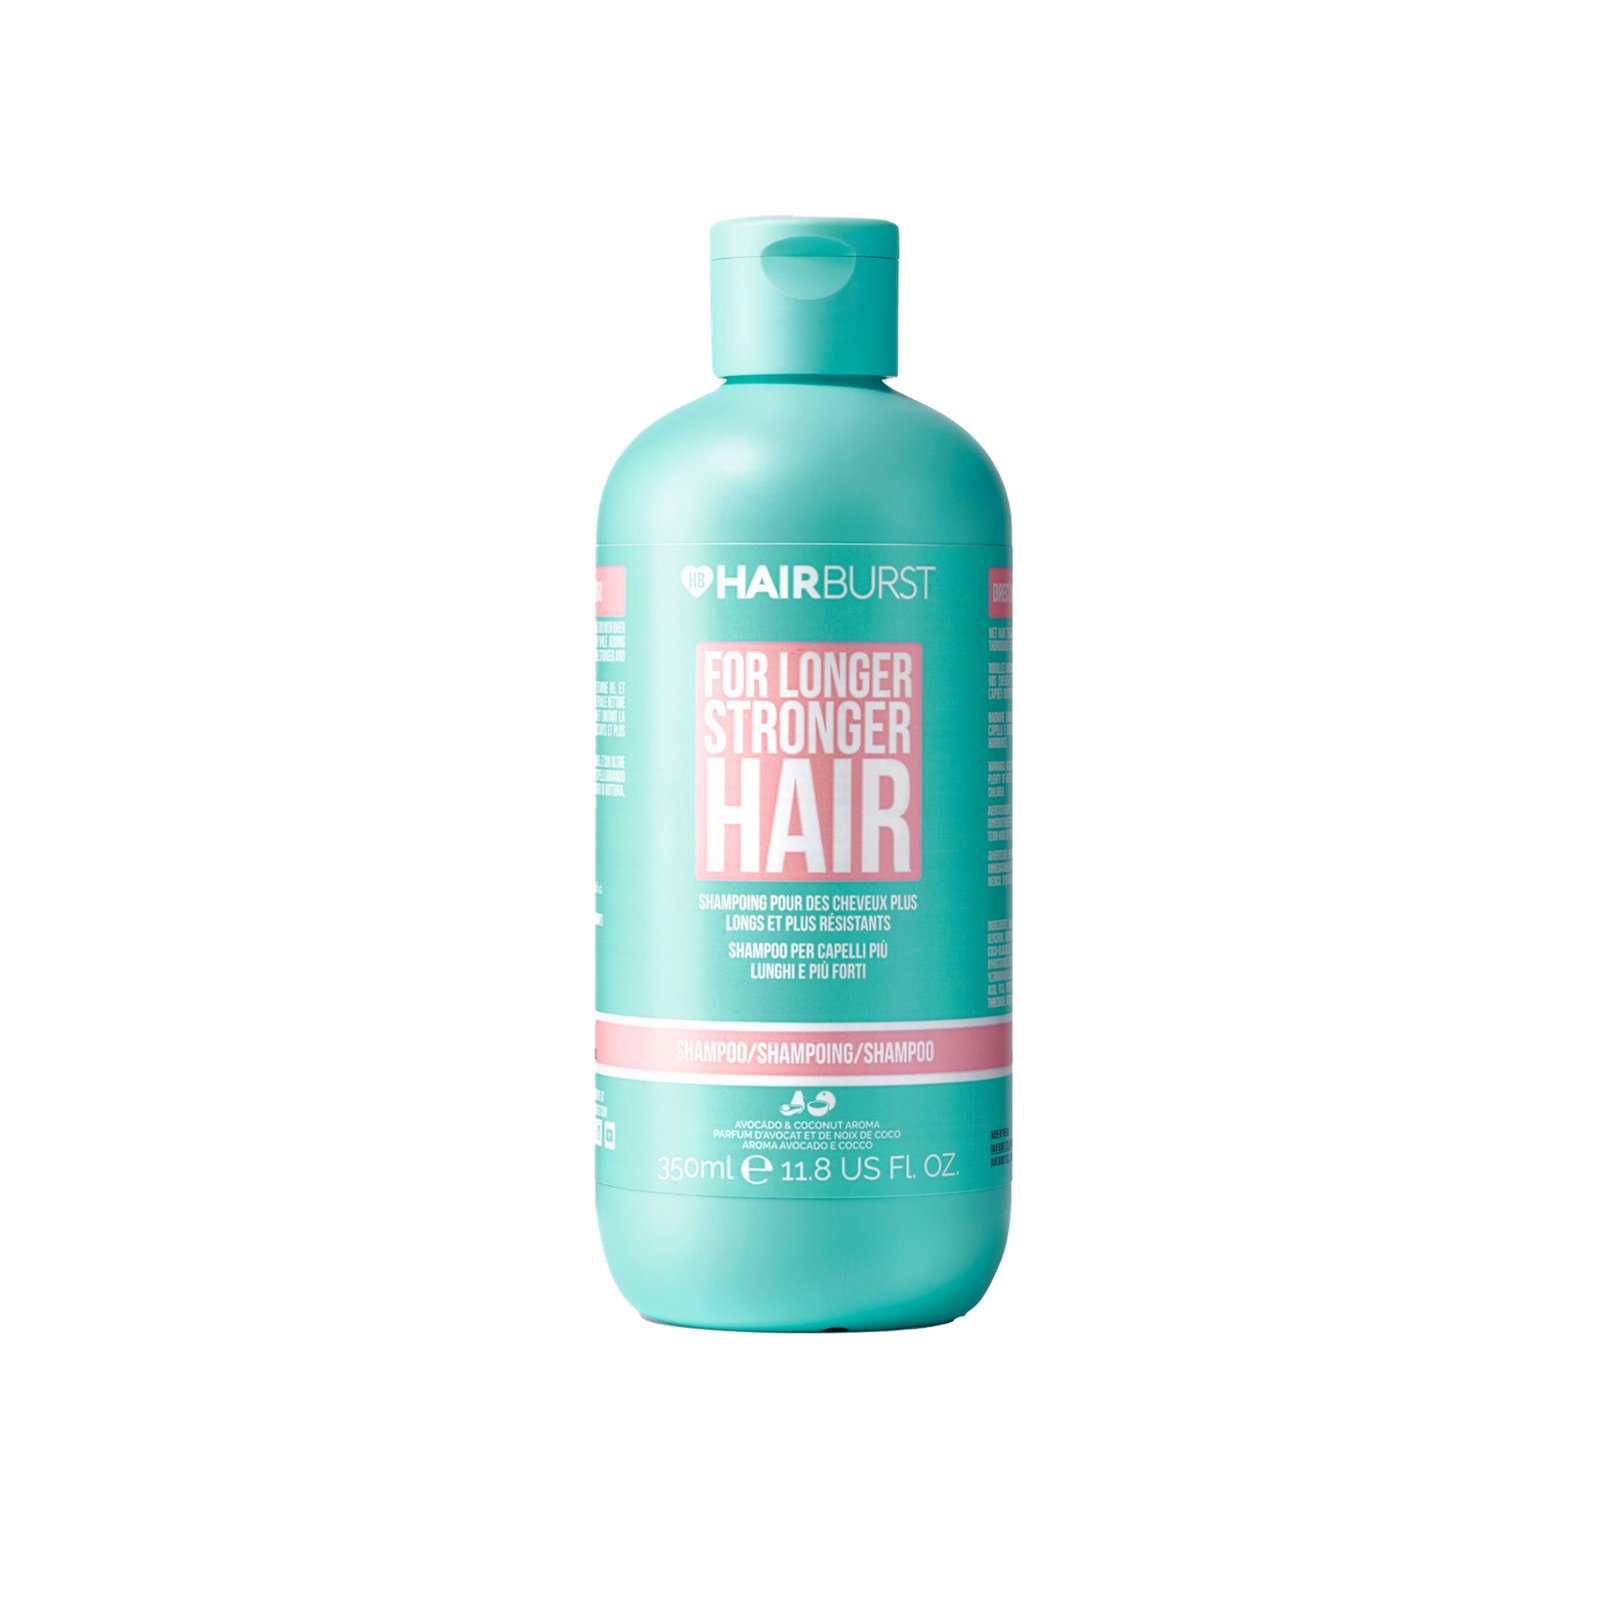 Hairburst For Longer Stronger Hair Shampoo 350ml (11.8 fl oz)